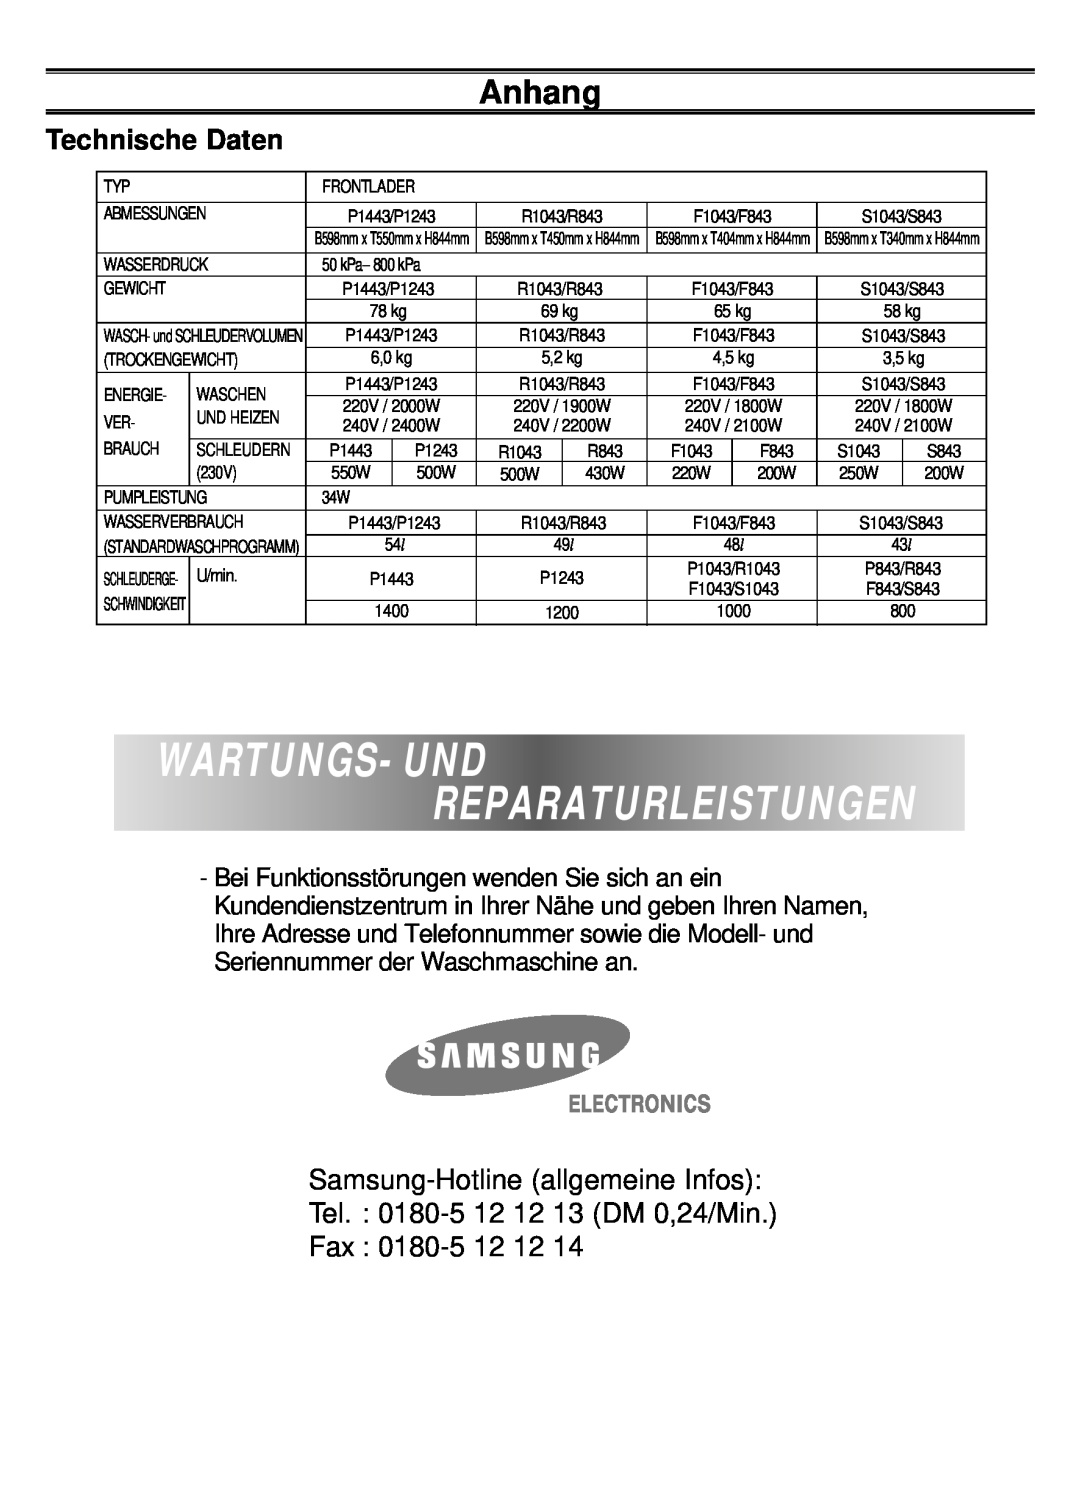 Samsung F1043, F843, S1043, S843, R843, R1043, P1243, P1443 manual Technische Daten, Wartungs- Und Reparaturleistungen, Anhang 